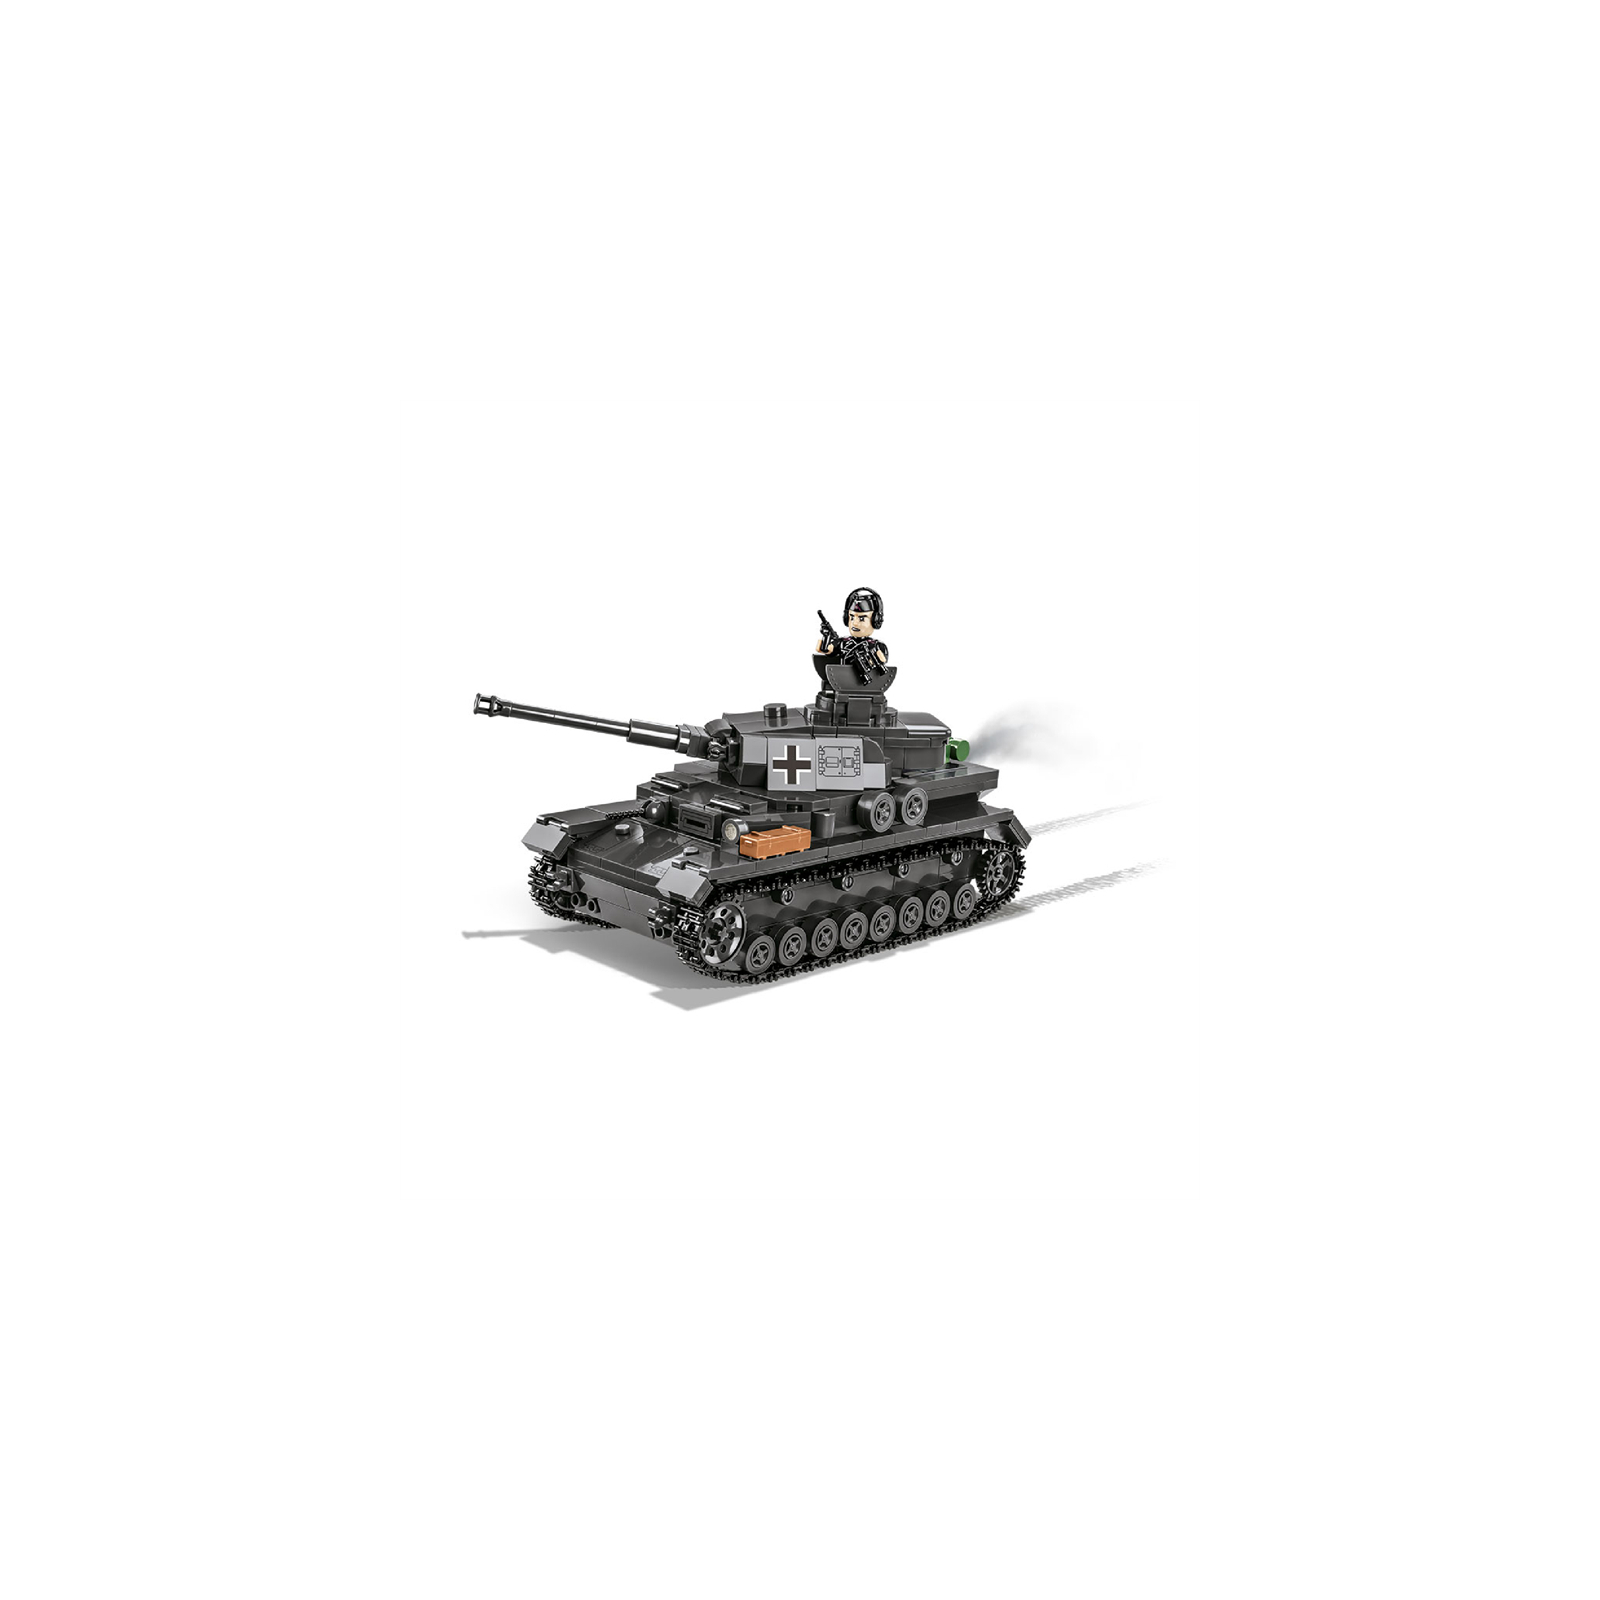 Конструктор Cobi Company of Heroes 3 Танк Panzer IV, 610 деталей (COBI-3045) зображення 11